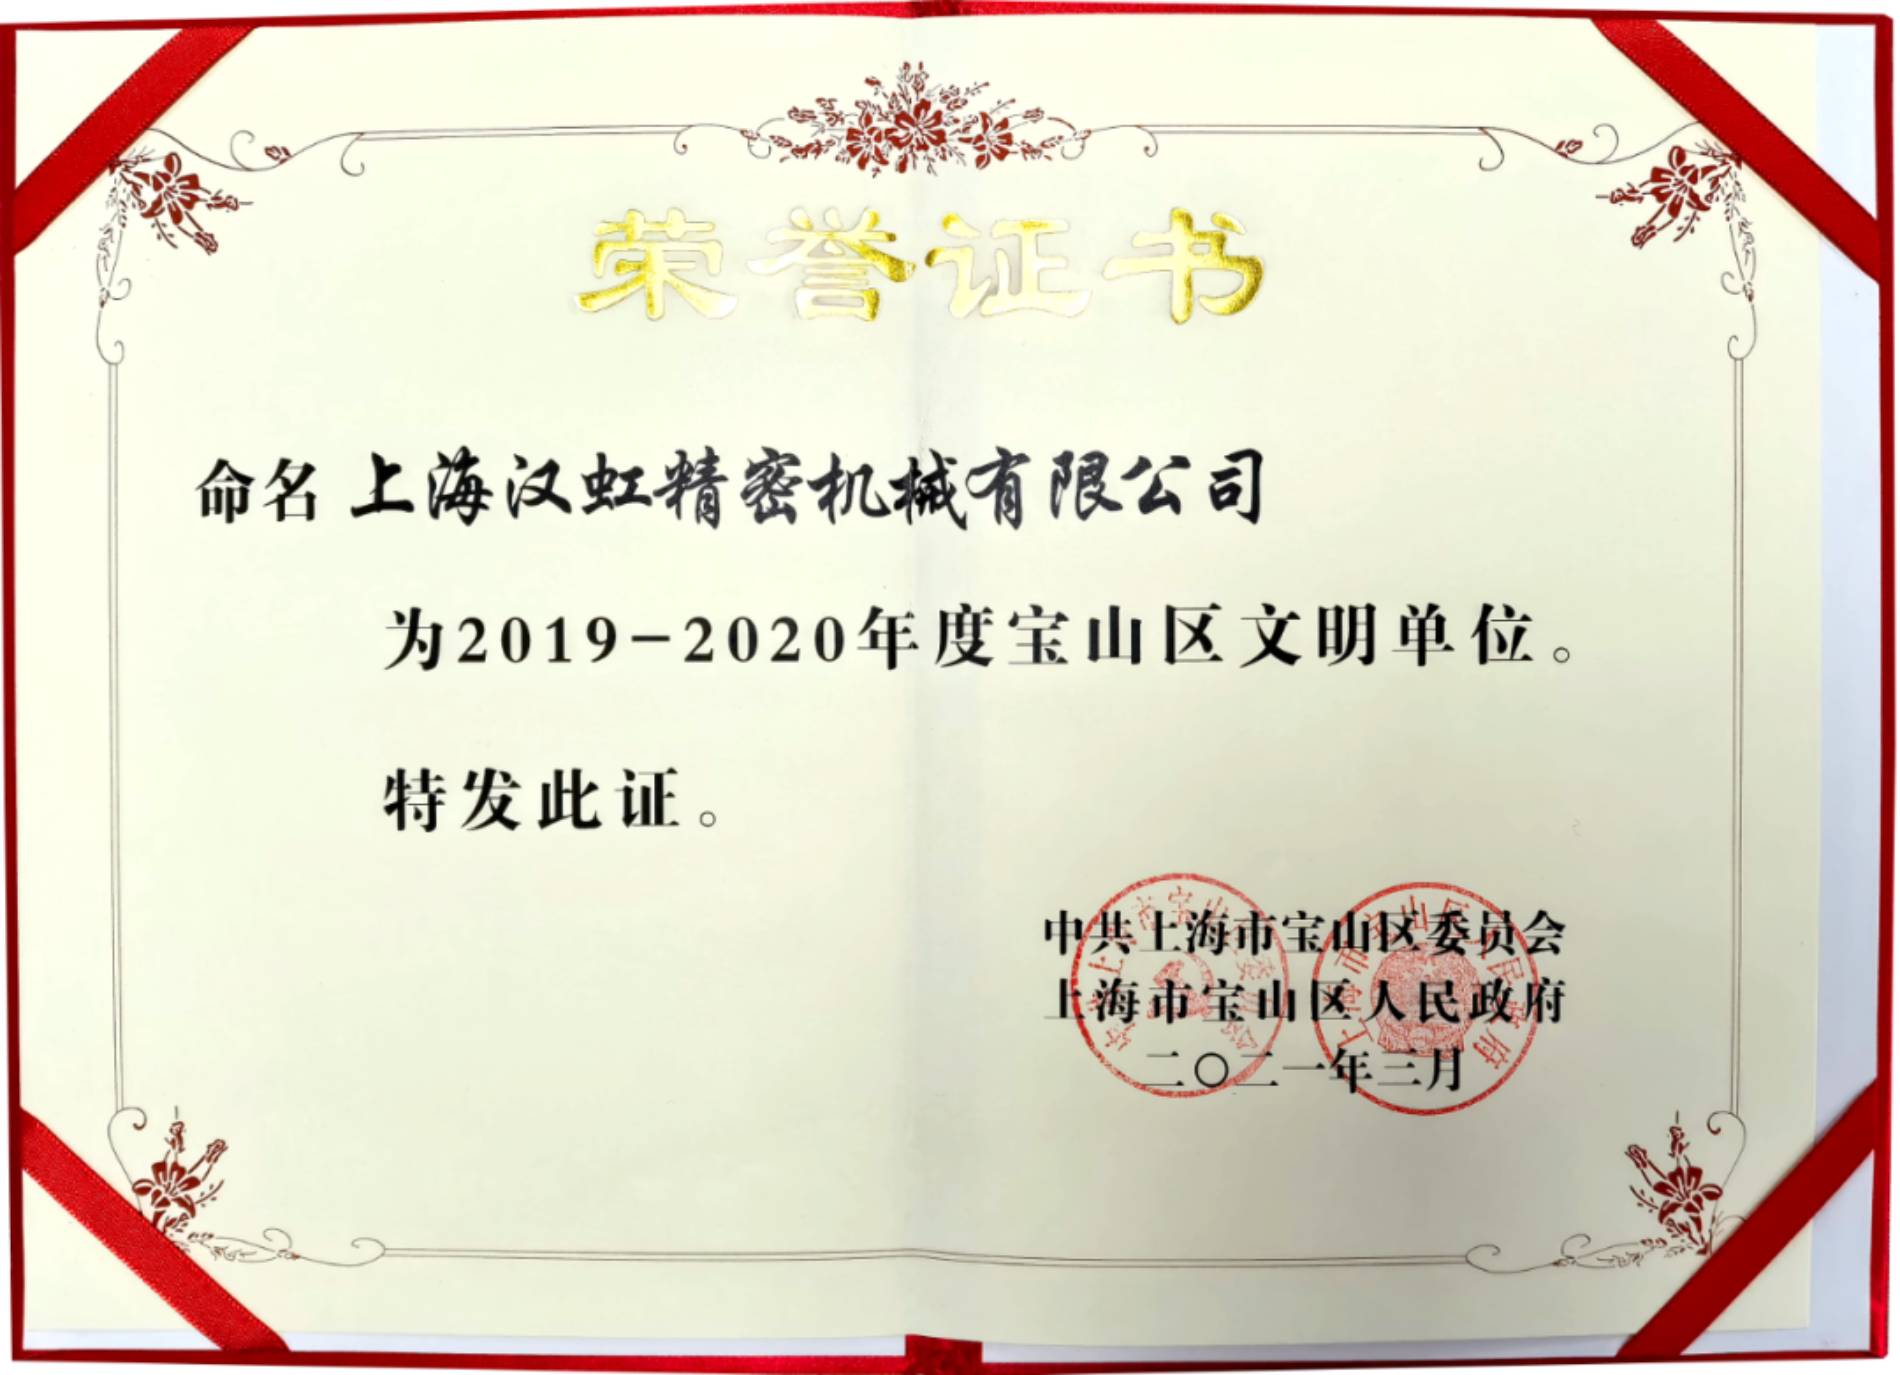 上海汉虹精密机械有限公司荣获2019-2020年度宝山区文明单位